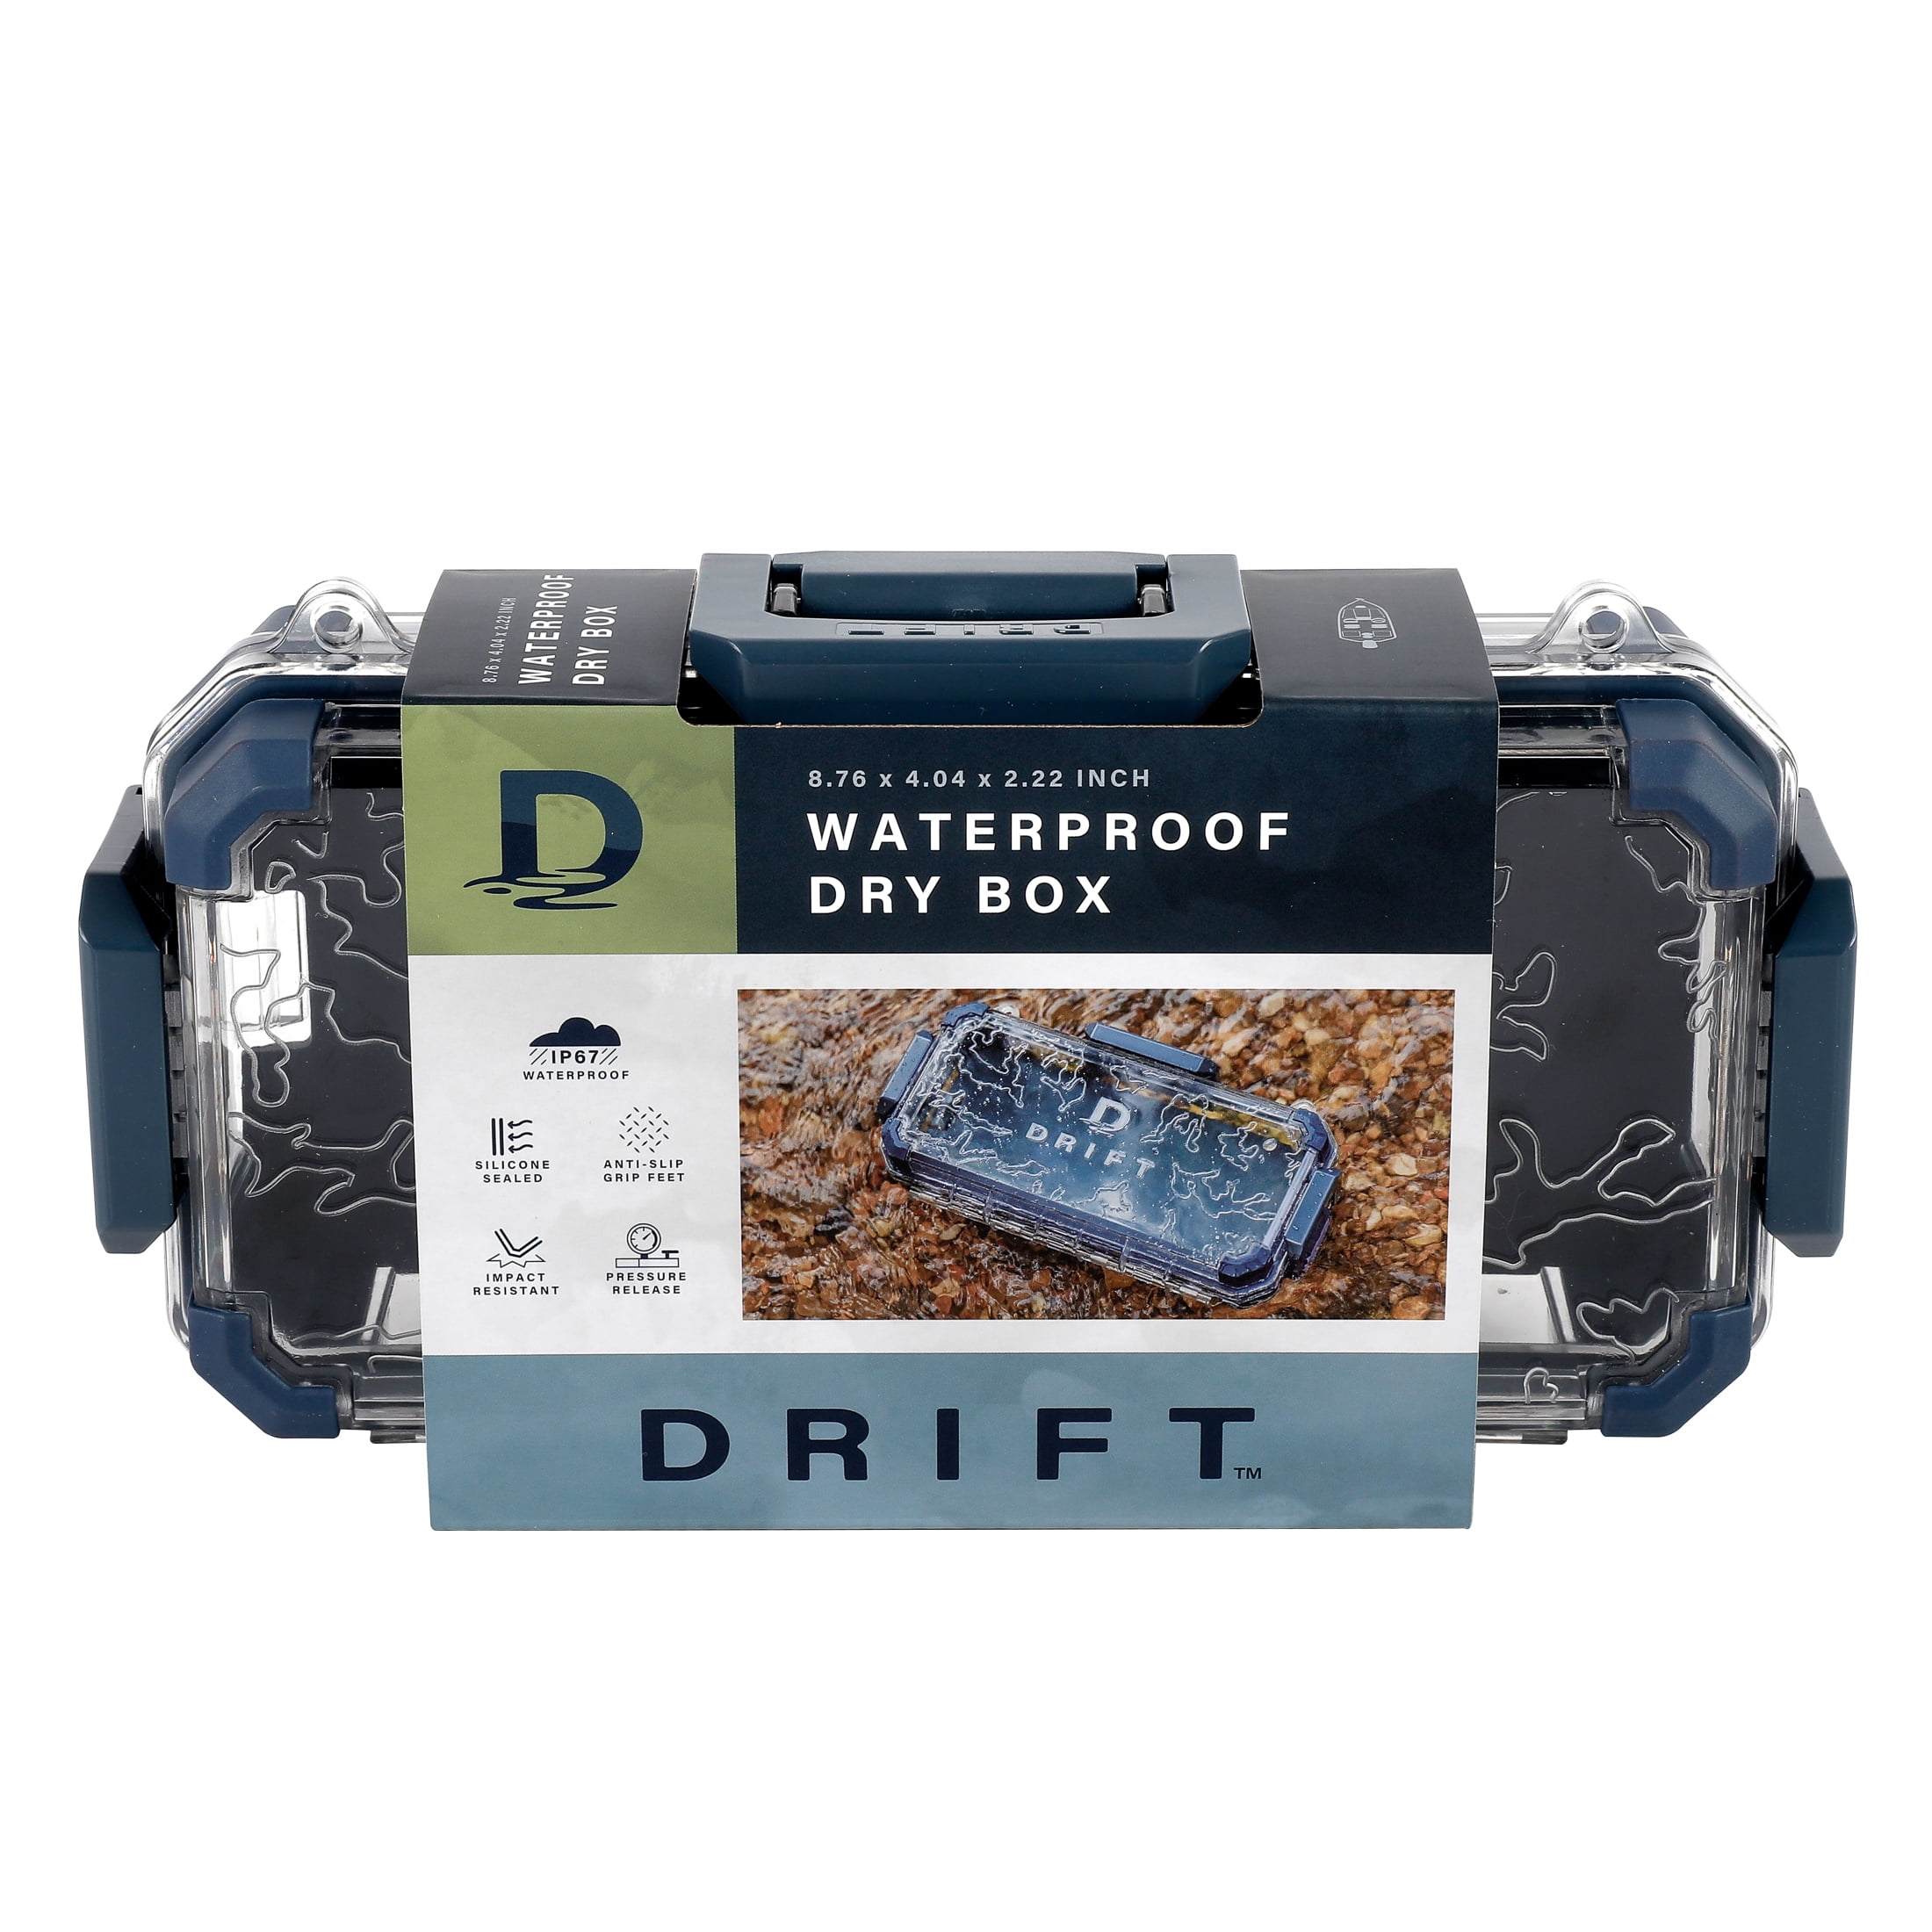 DRIFT Waterproof Marine Dry Box, 10 x 5 